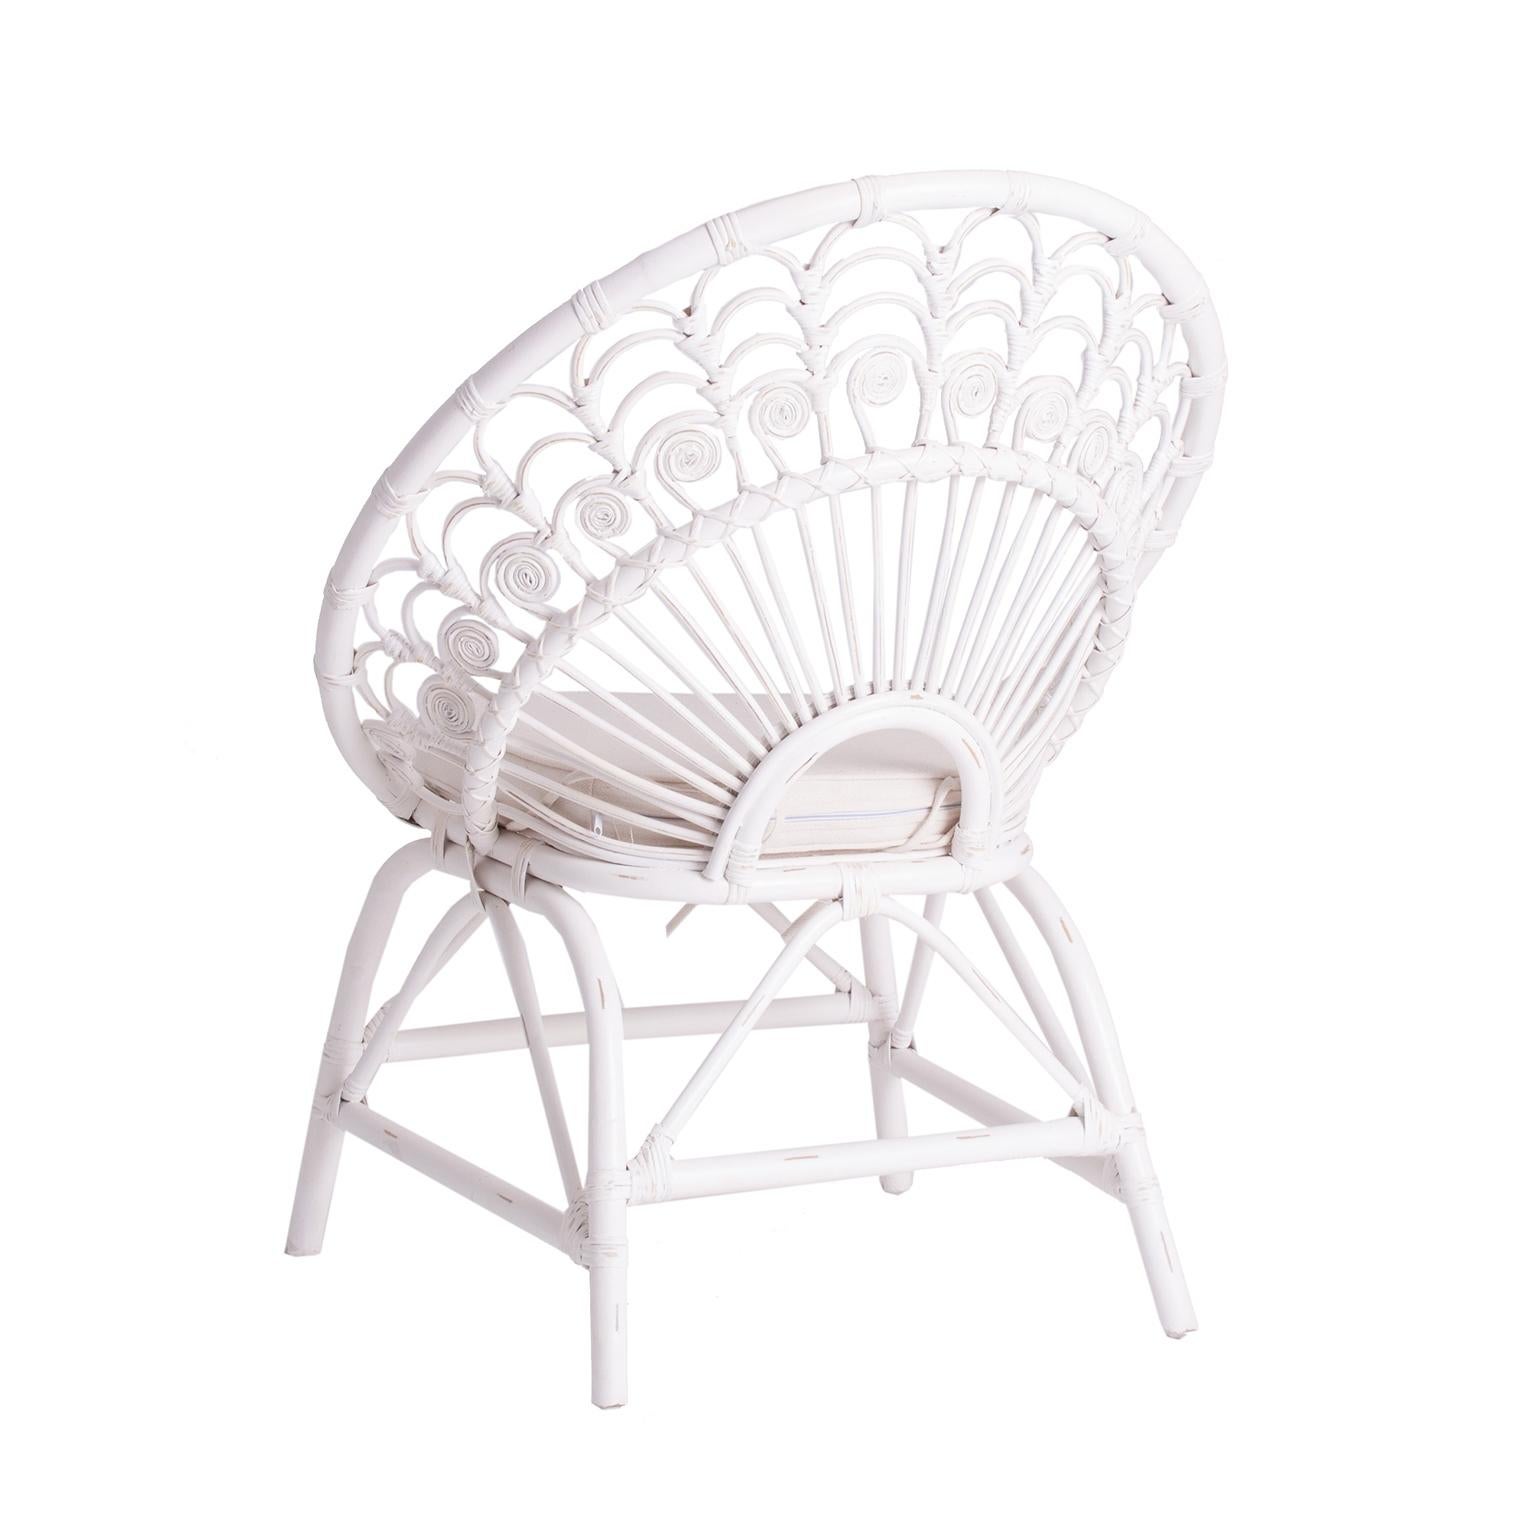 Skulpturaler und wunderschöner Sessel aus Rattan und Geflecht mit Pfauendesign. Vintage-Stil mit Patina-Effekt und Bohème-Chic-Look!